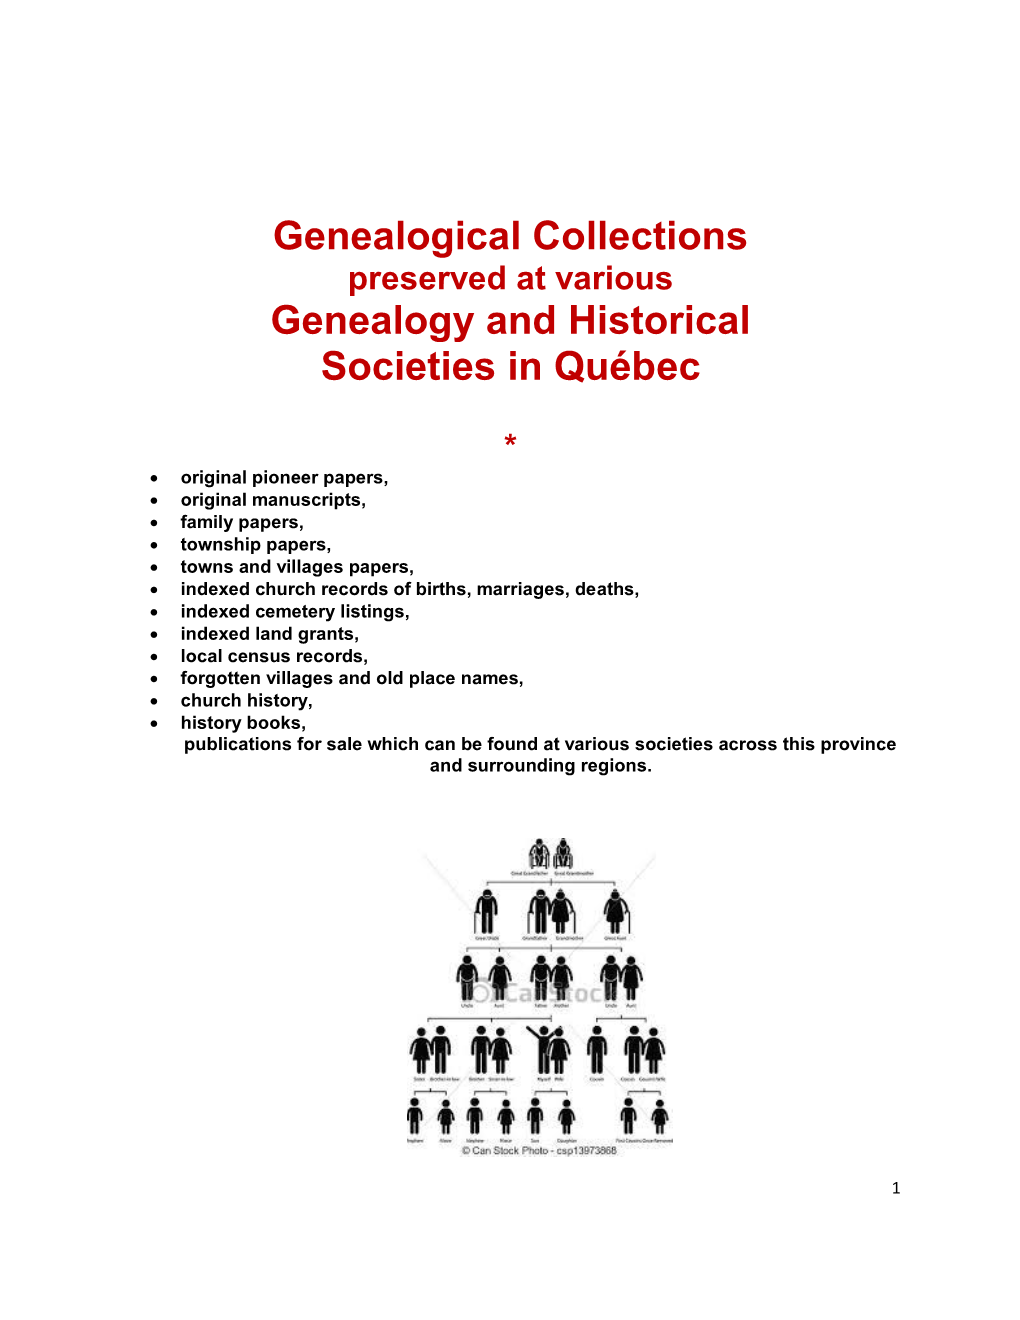 Genealogy and Historical Societies in Québec